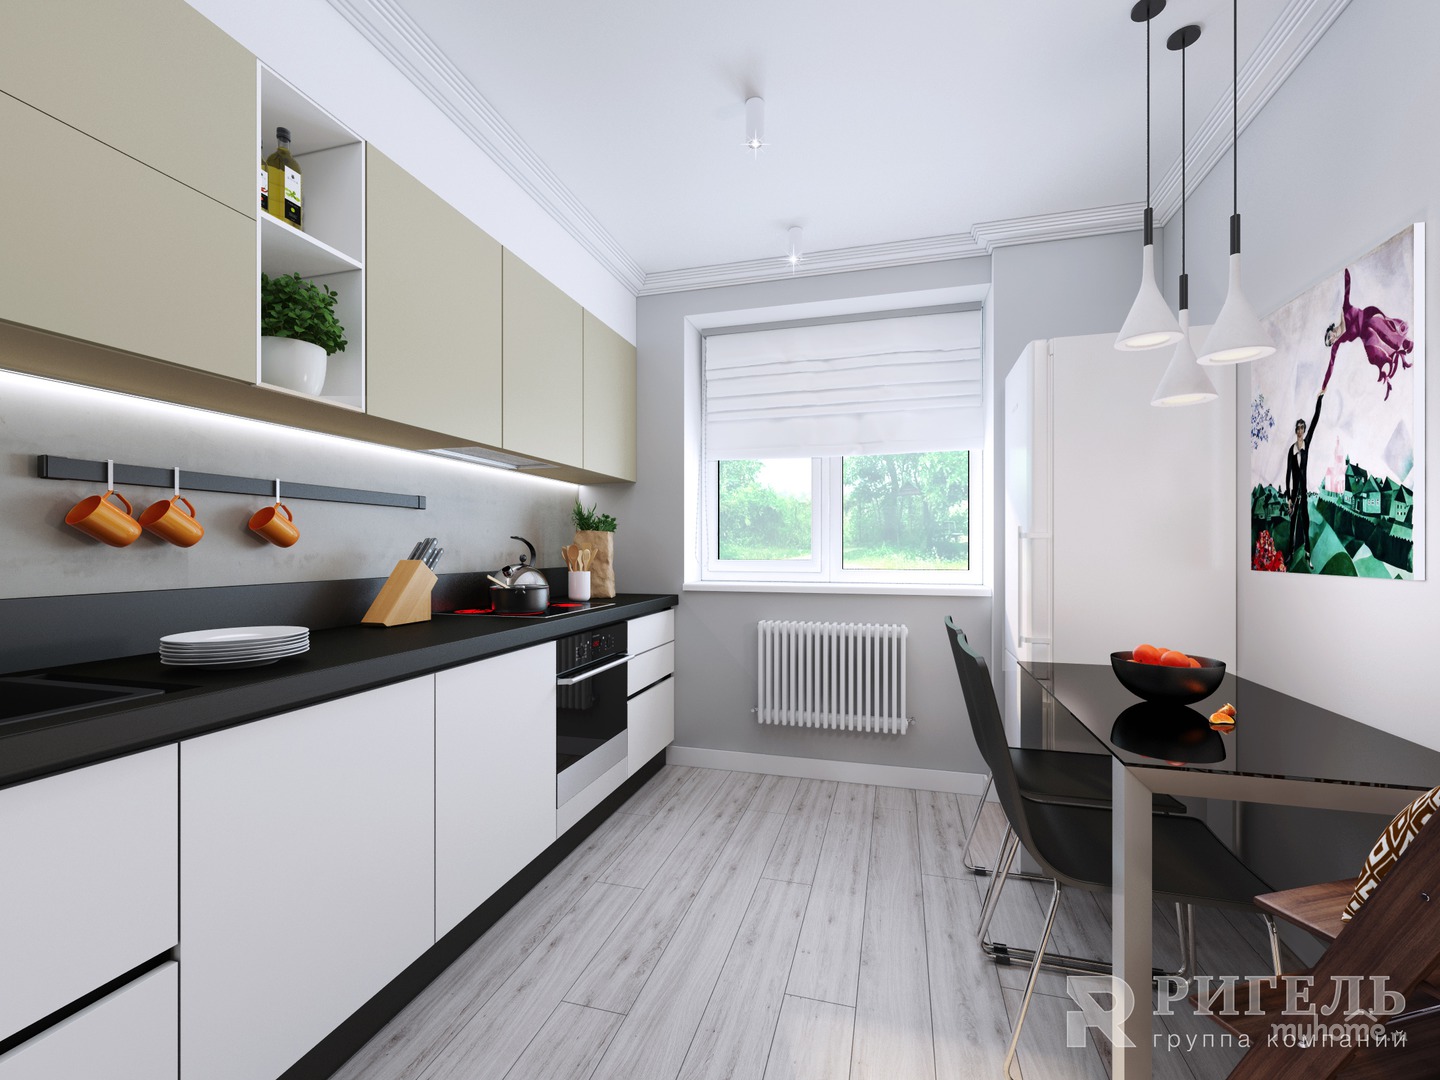 Дизайн кухни 12 кв м - новинки 2020: фото